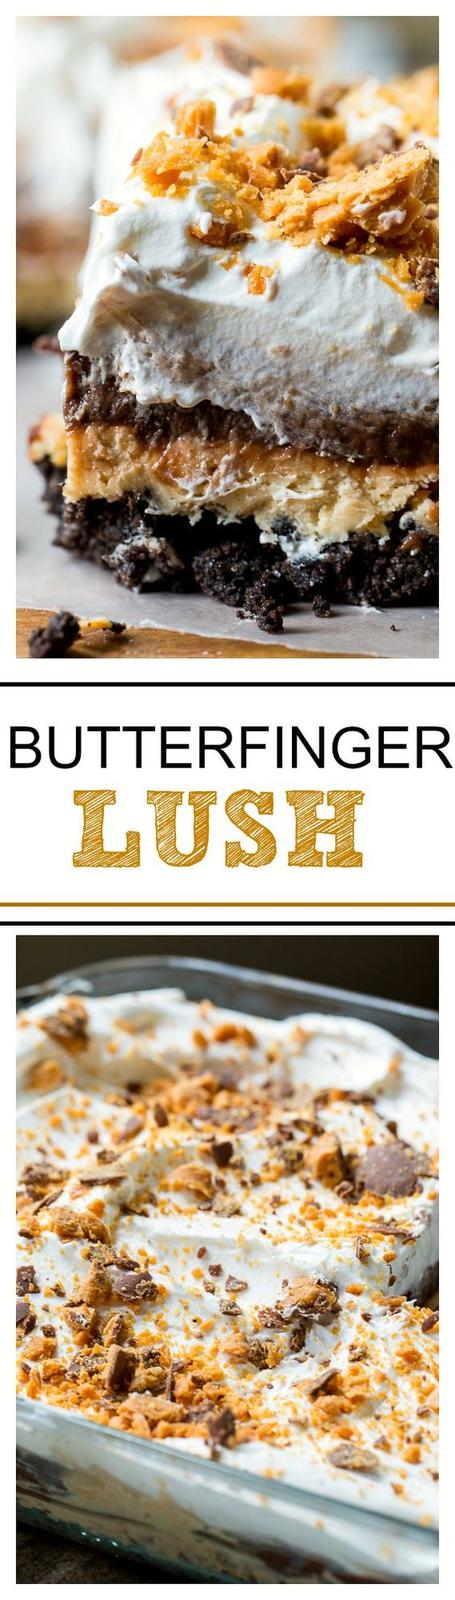 Americké koláčky - Butterfinger Lush